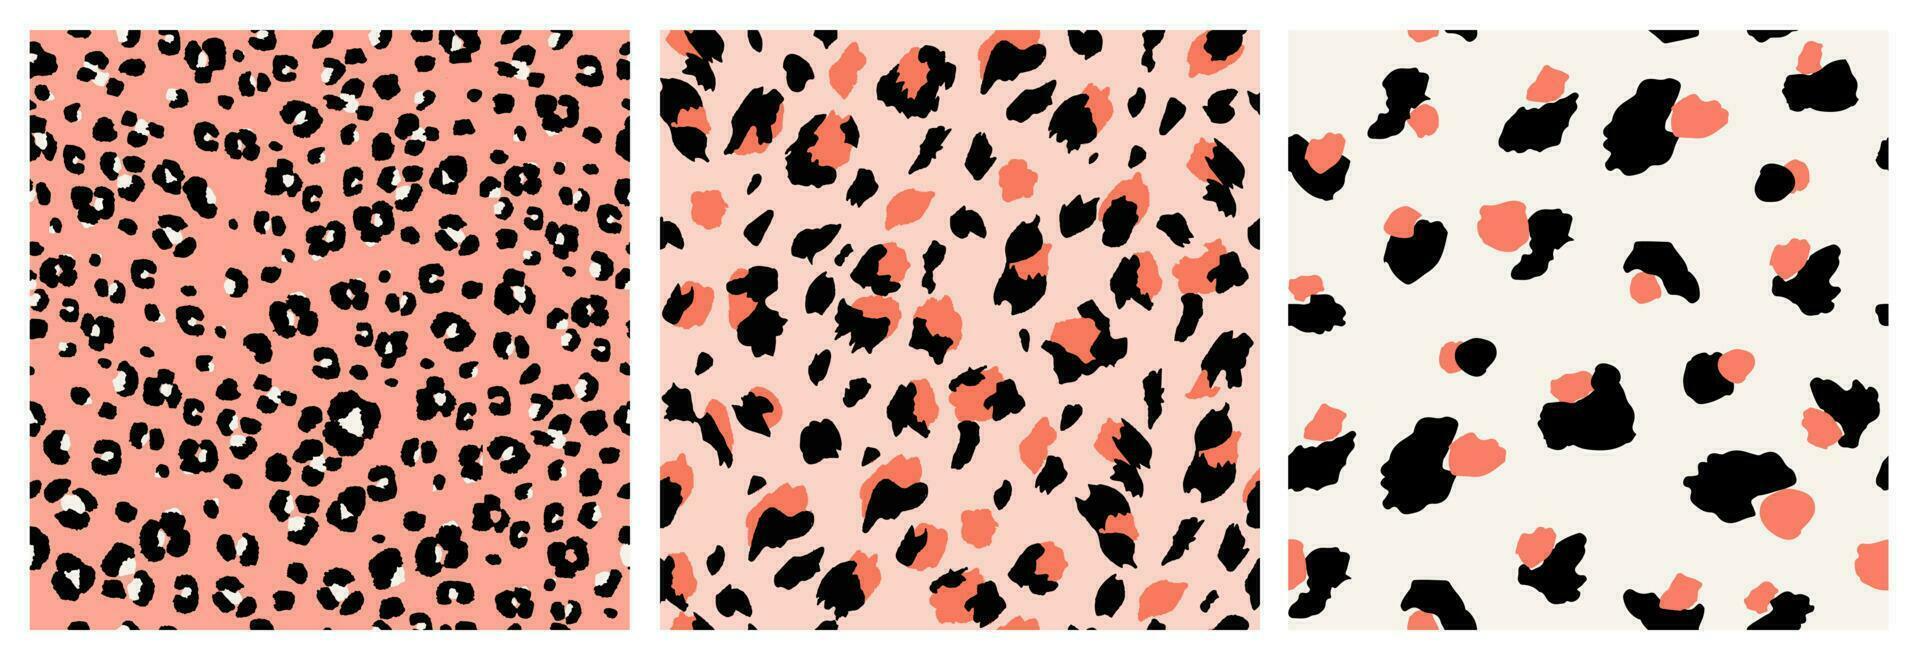 uppsättning av abstrakt leopard hud sömlös mönster. djur- skriva ut. geometrisk folklore prydnad för textil- baner, omslag, tapet. vektor illustration.